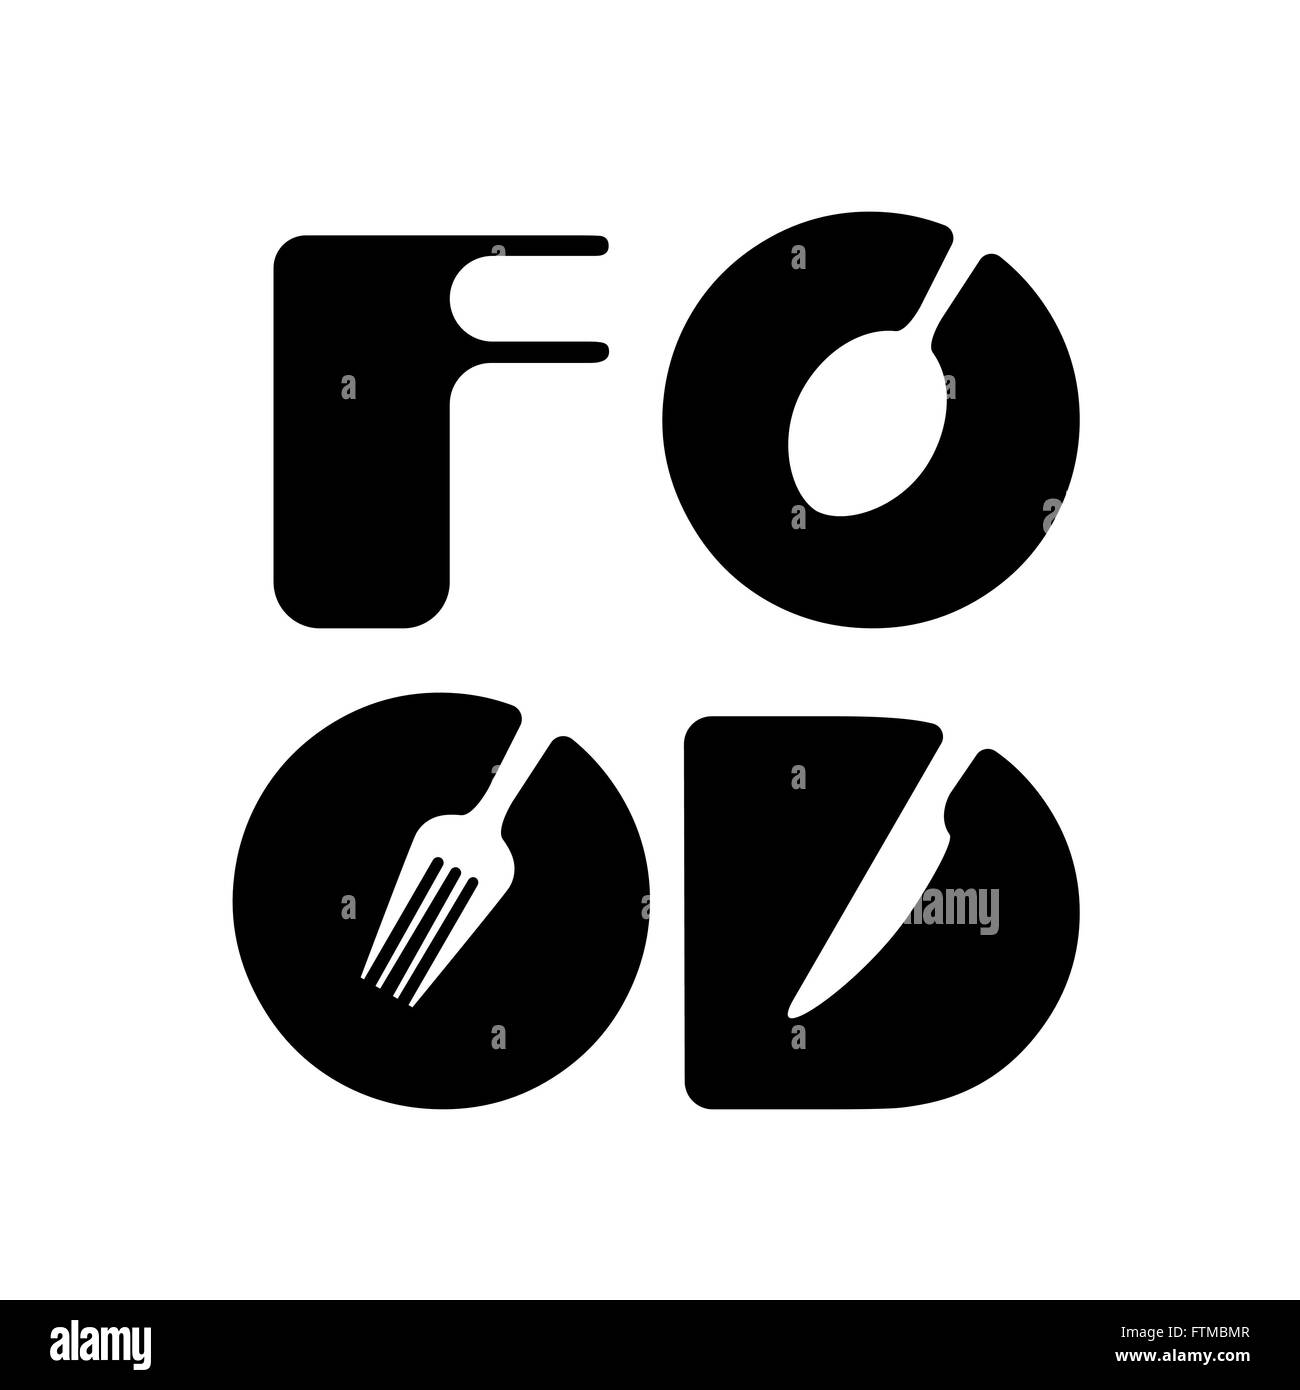 Kreative Küche Menü Wortelemente Logo design mit Löffel, Messer und Gabel. Fastfood-Logo, Essen und trinken-Konzept. Vektor-illustration Stock Vektor